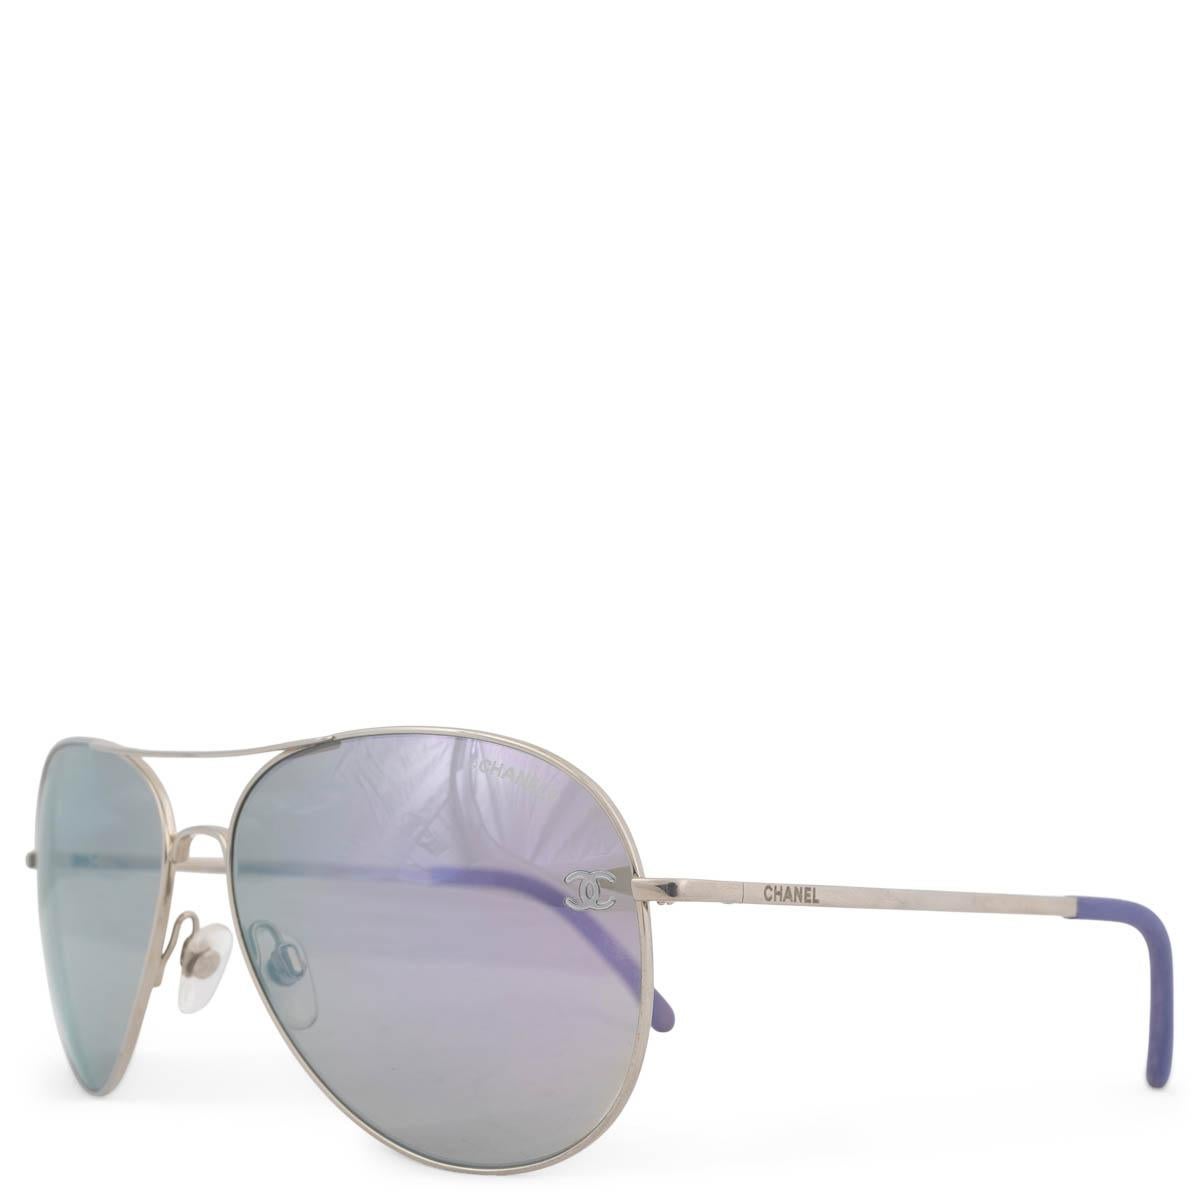 100% authentische Chanel 4189 Piloten-Sonnenbrille mit verchromten Gläsern und einem hellen Titanrahmen. Mit Details aus lavendelfarbenem Kalbsleder an den Griffenden. Wurde getragen und ist in ausgezeichnetem Zustand. Wurde getragen und kommt mit